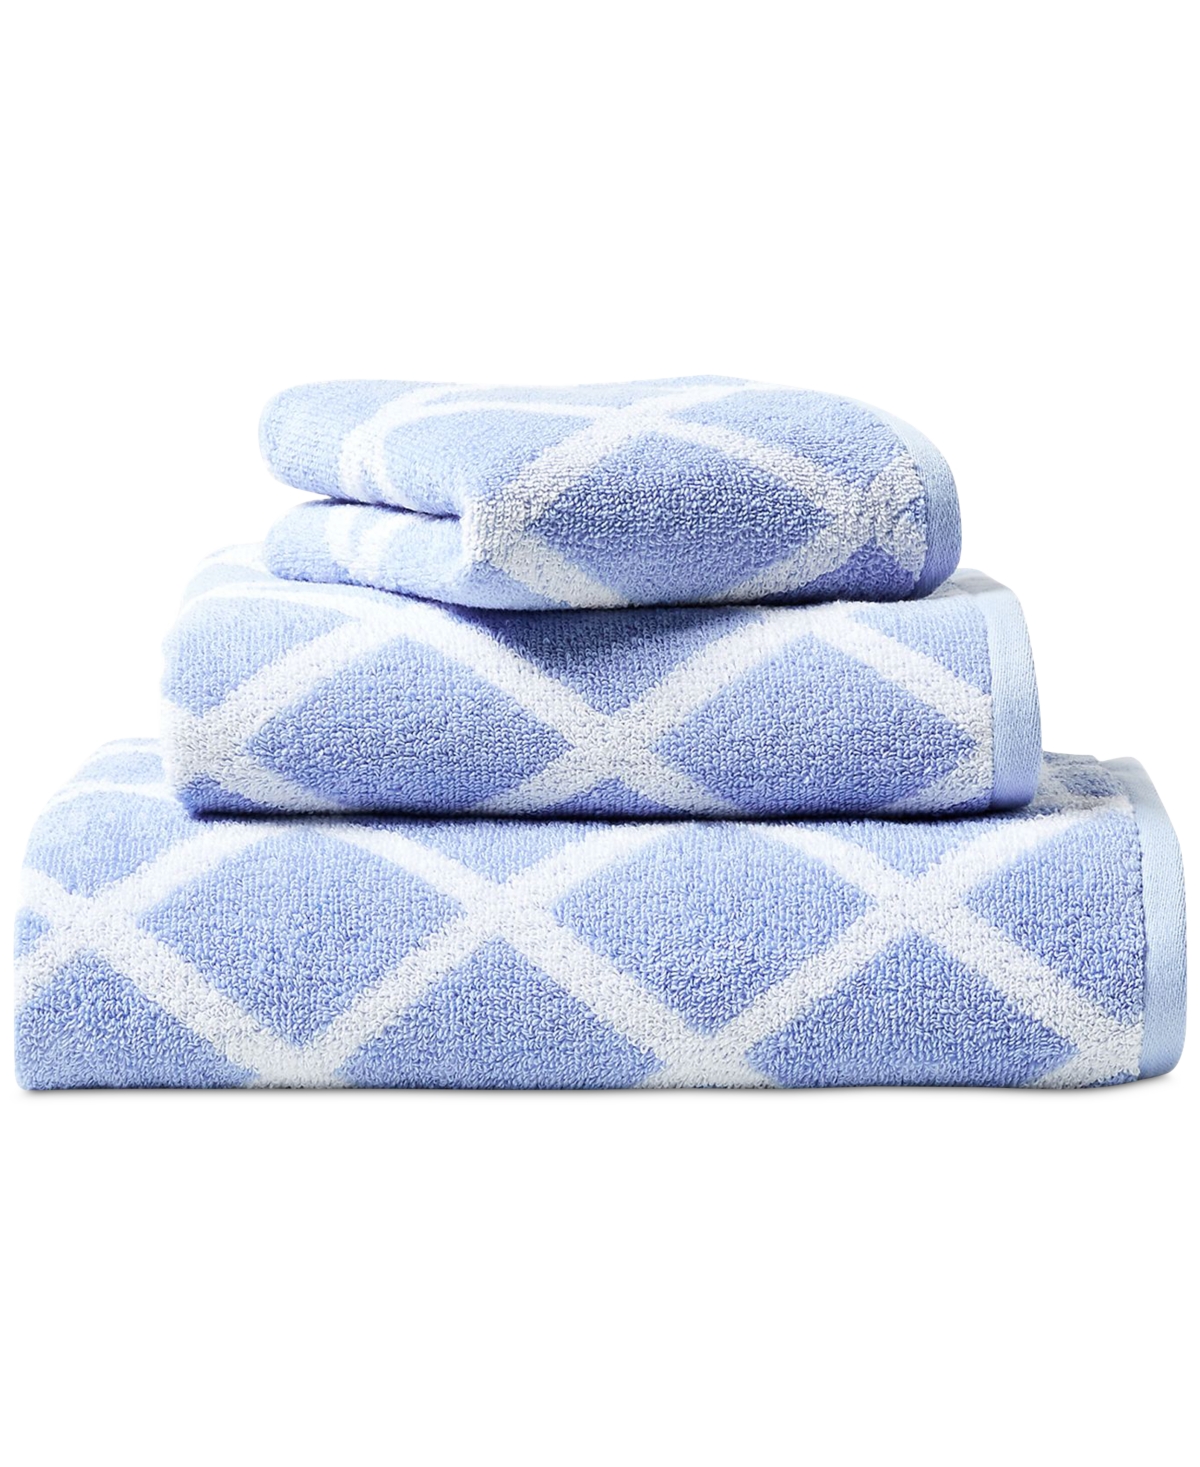 Lauren Ralph Lauren Sanders Diamond Cotton Wash Towel Bedding In Blue Cornflower